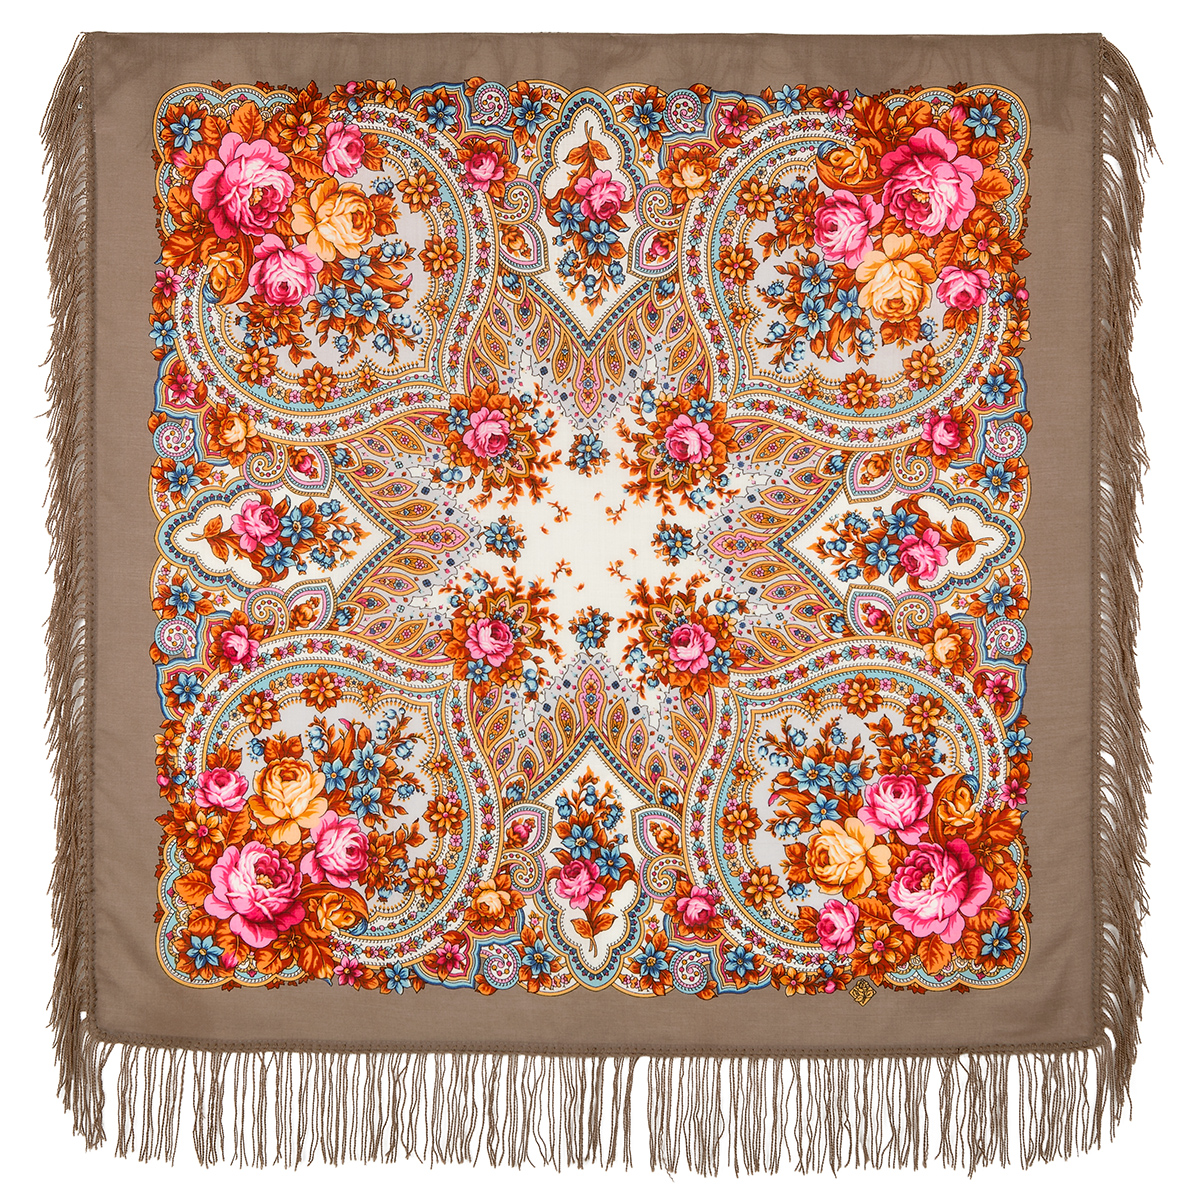 Платок женский Павловопосадский платок 1706 коричневый/оранжевый/розовый, 89х89 см